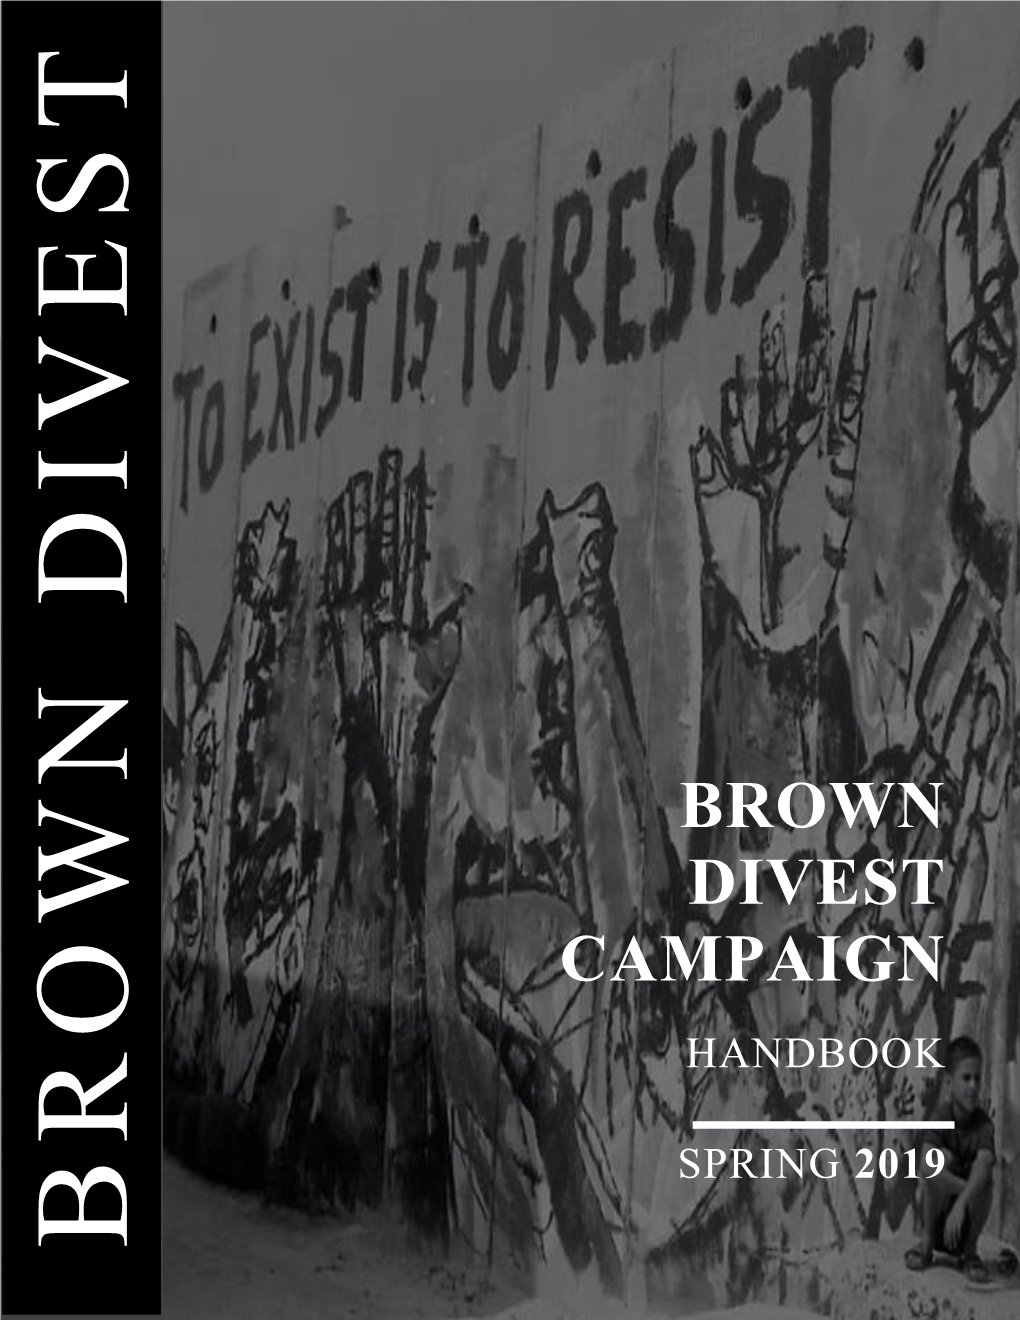 Brown Divest Campaign Handbook